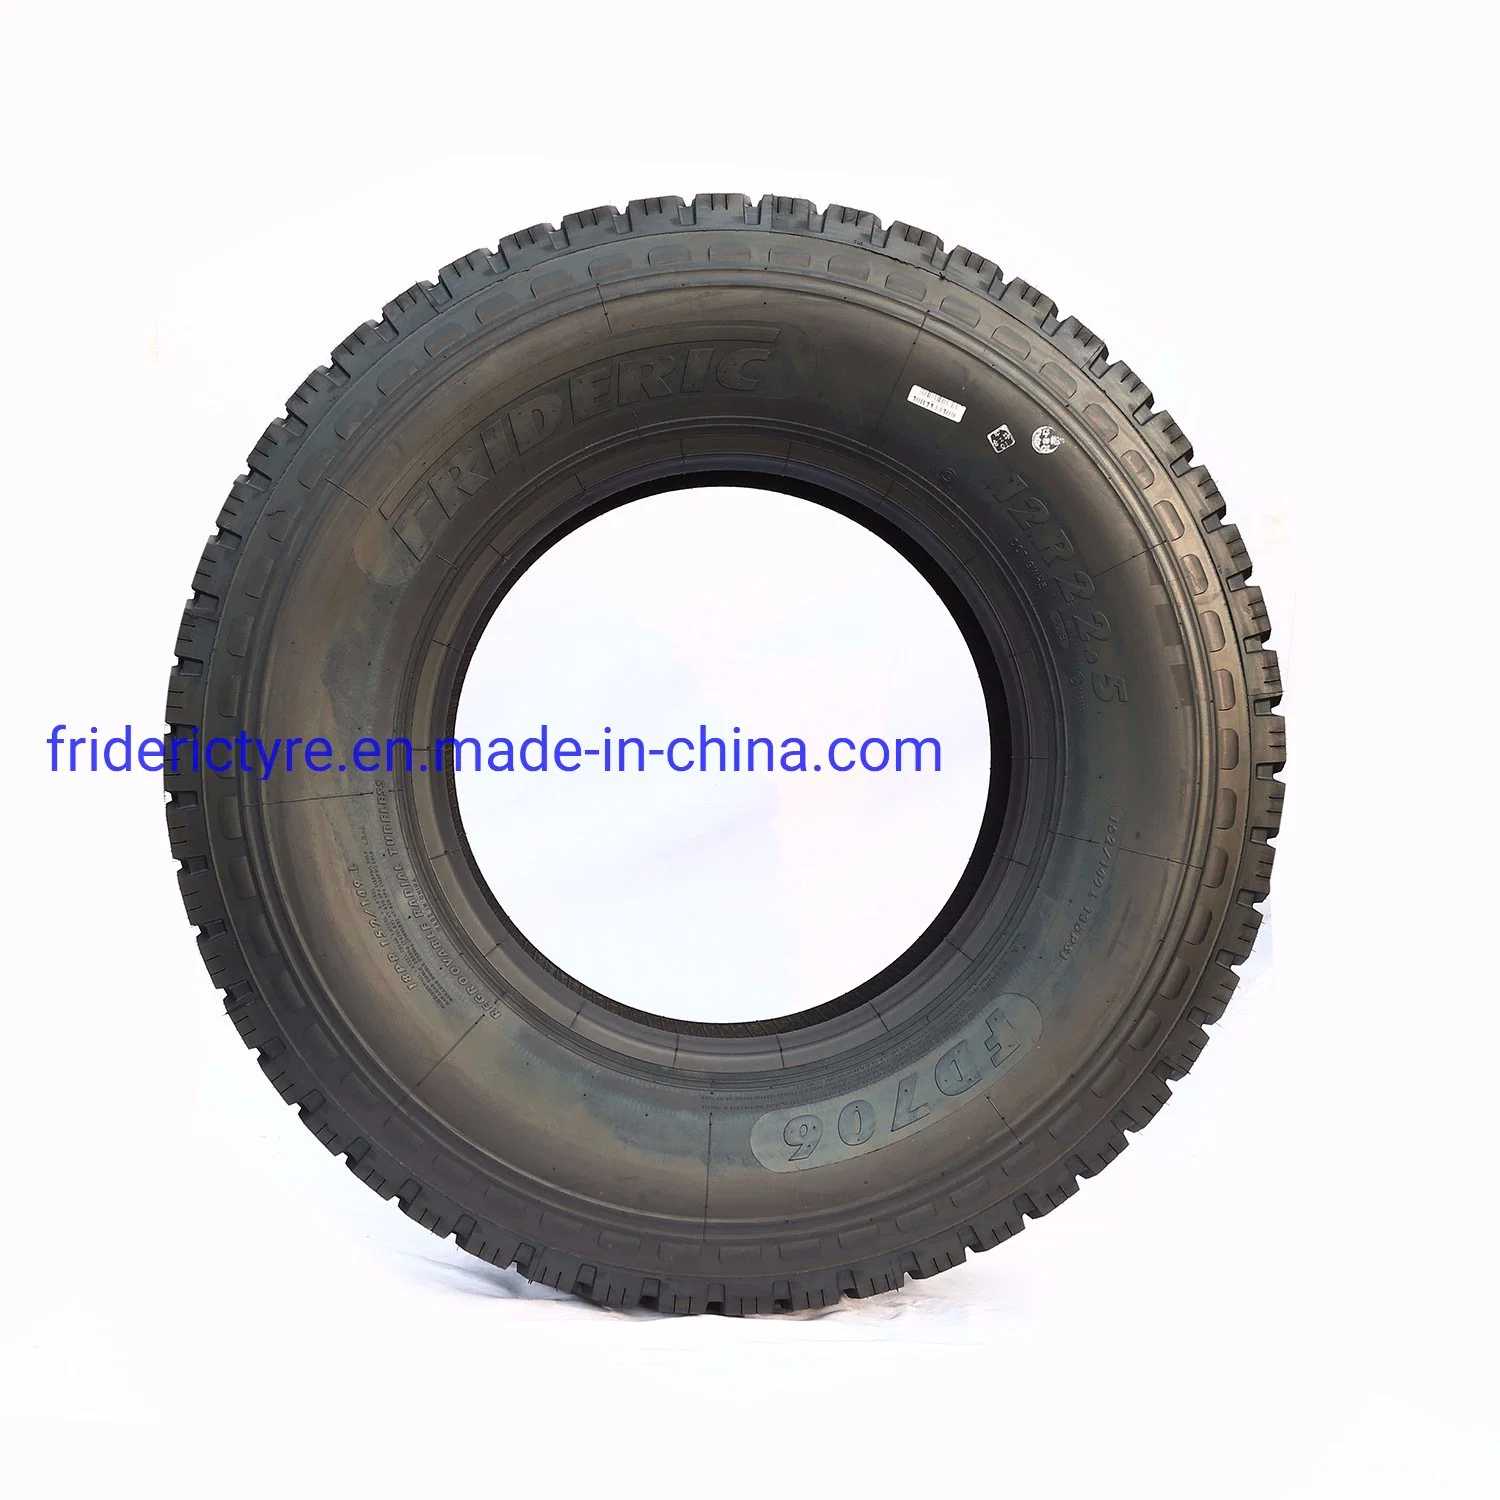 12r22.5 de la marca china de alta calidad Frideric mejor precio neumáticos para camiones